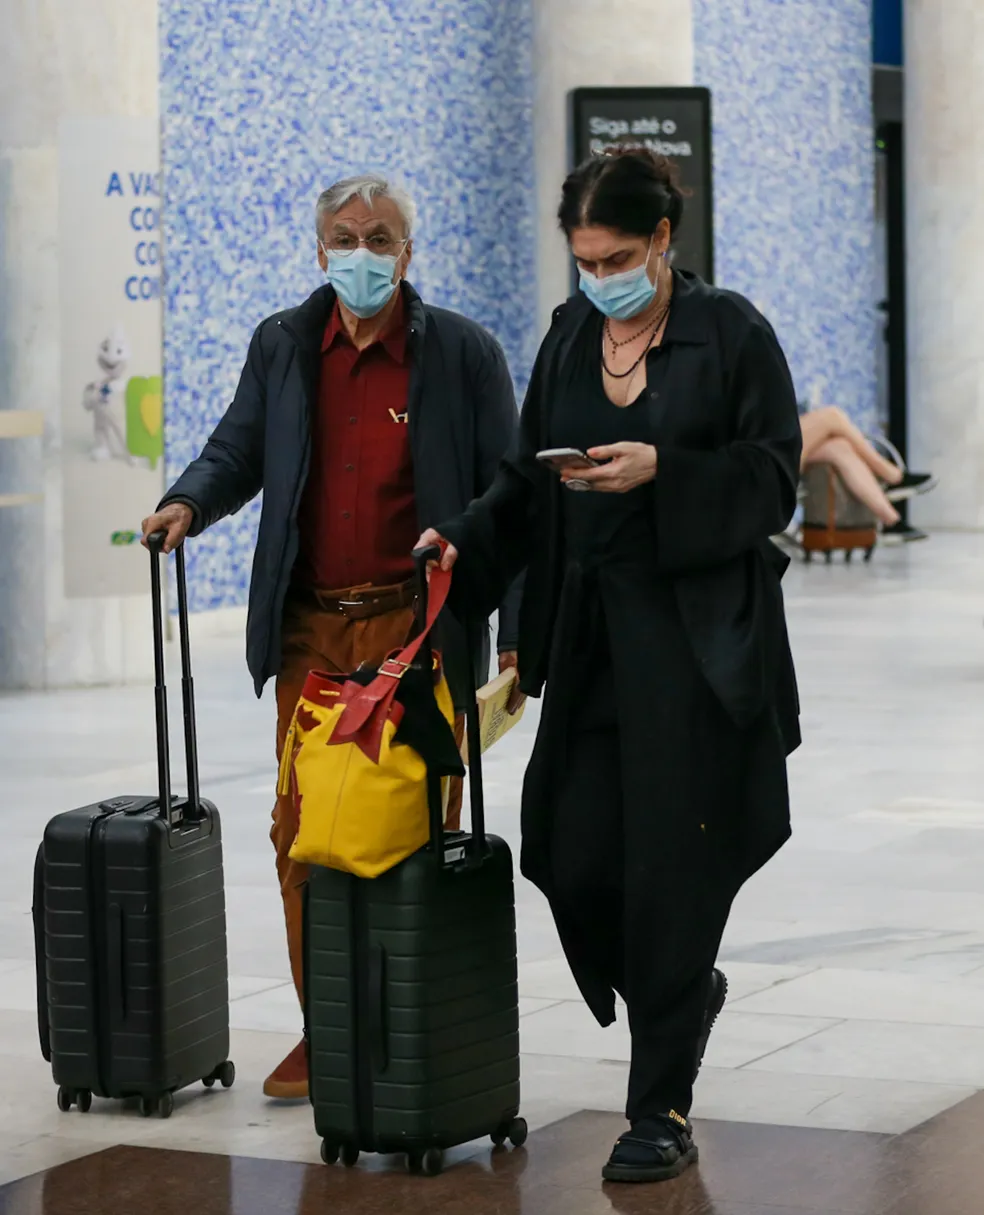 Caetano Veloso aparece com malas nas mãos e máscara de proteção no rosto. Paula Lavigne segura um celular com uma das mãos, enquanto leva as malas na outra